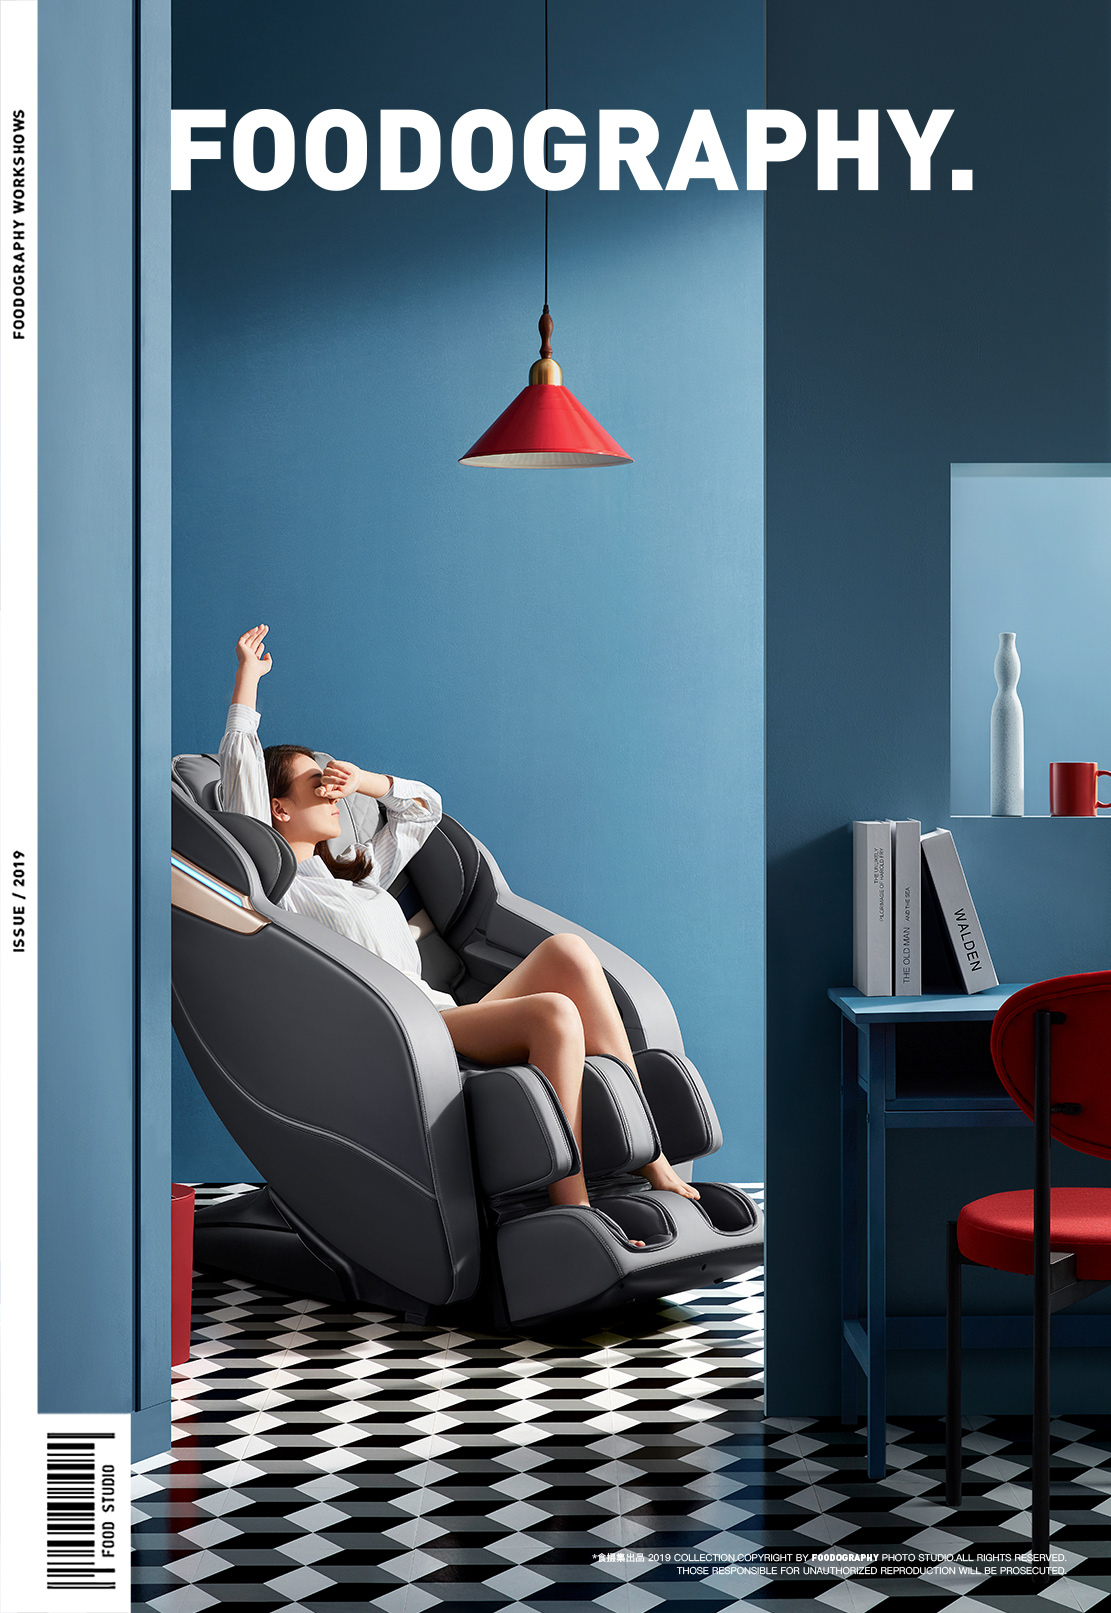 design Fashion  massage chair 产品摄影 按摩椅 电商摄影 静物摄影